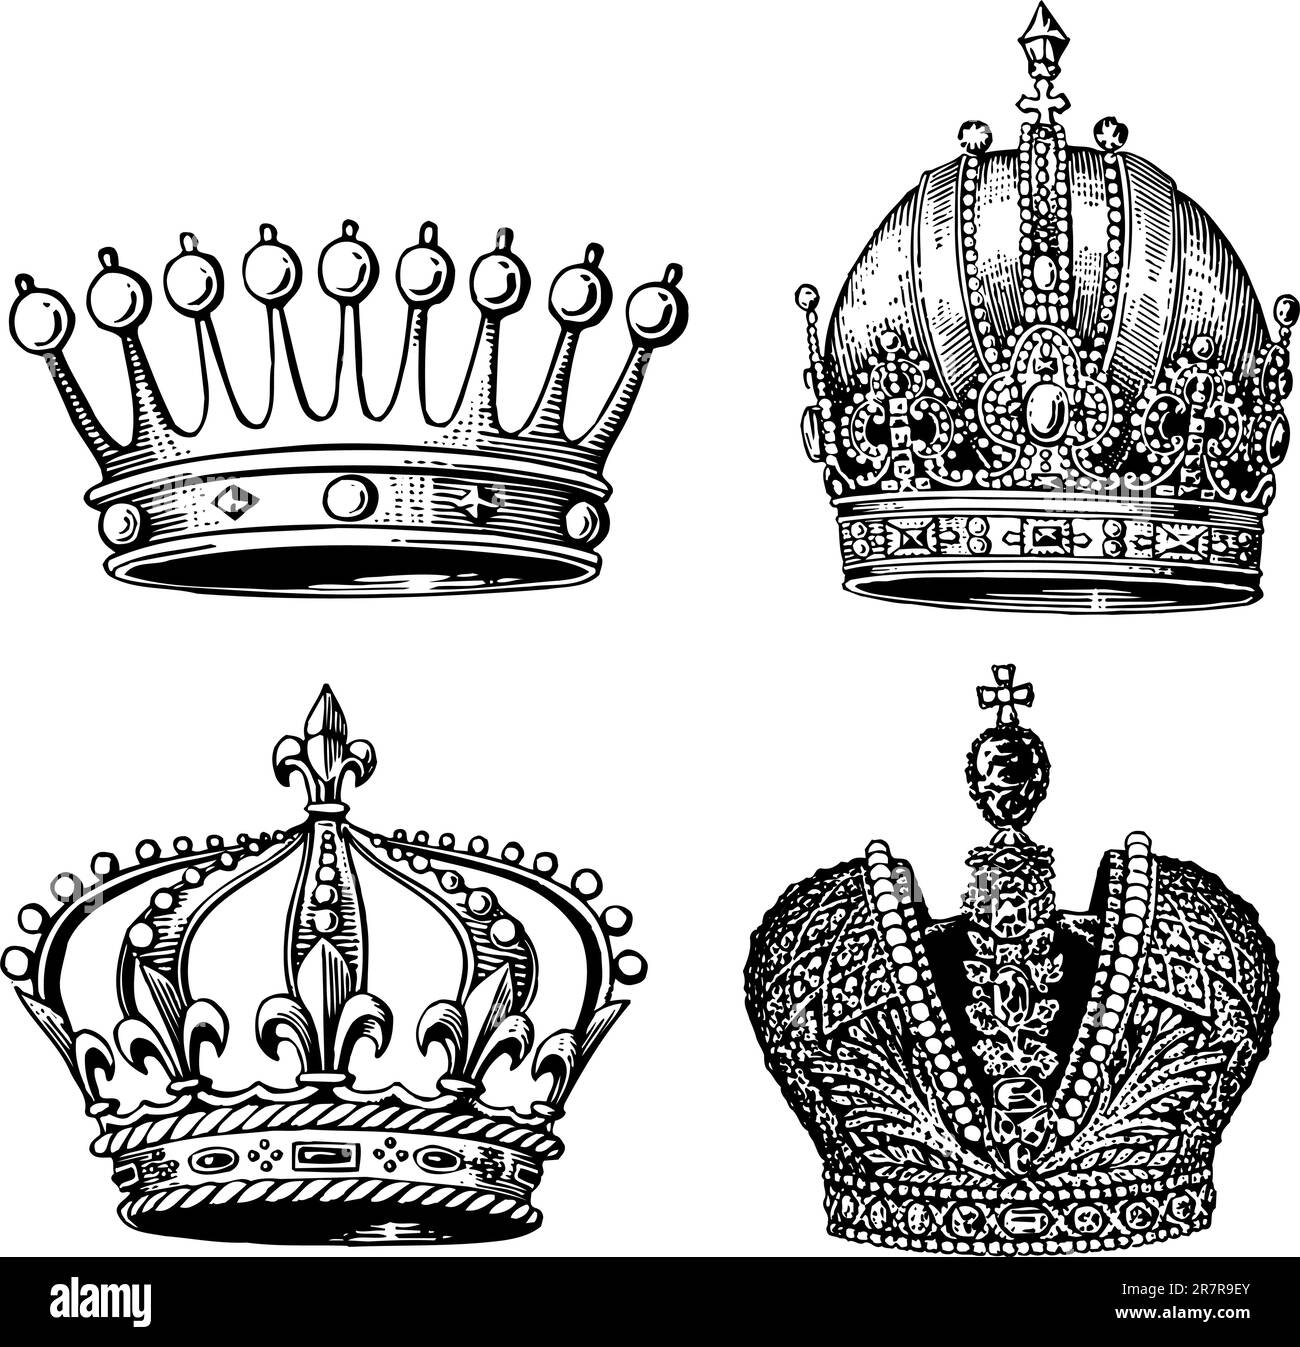 Alcune corone diverse isolate su sfondo bianco Illustrazione Vettoriale